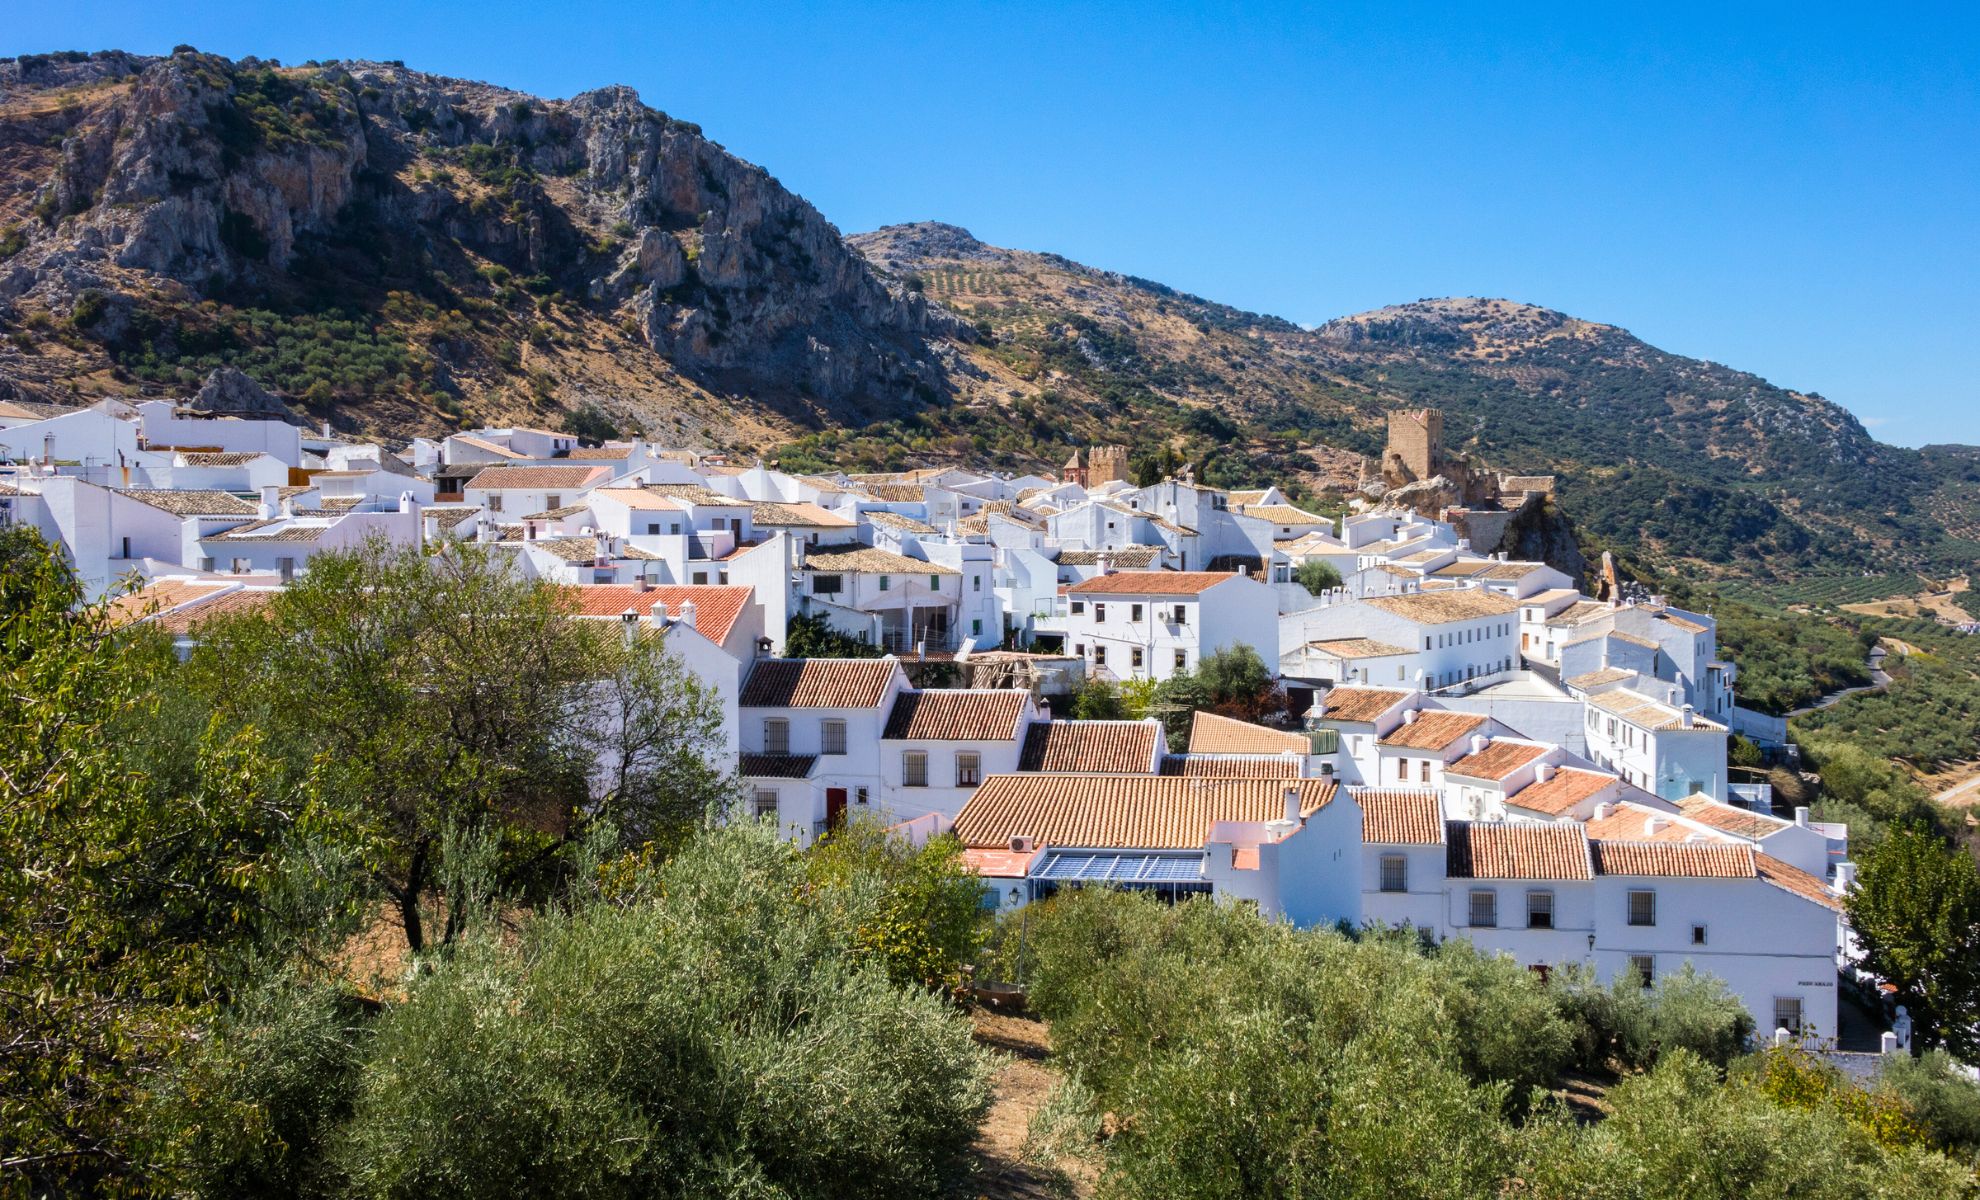 Le village de Zuheros, Cordoue, Espagne